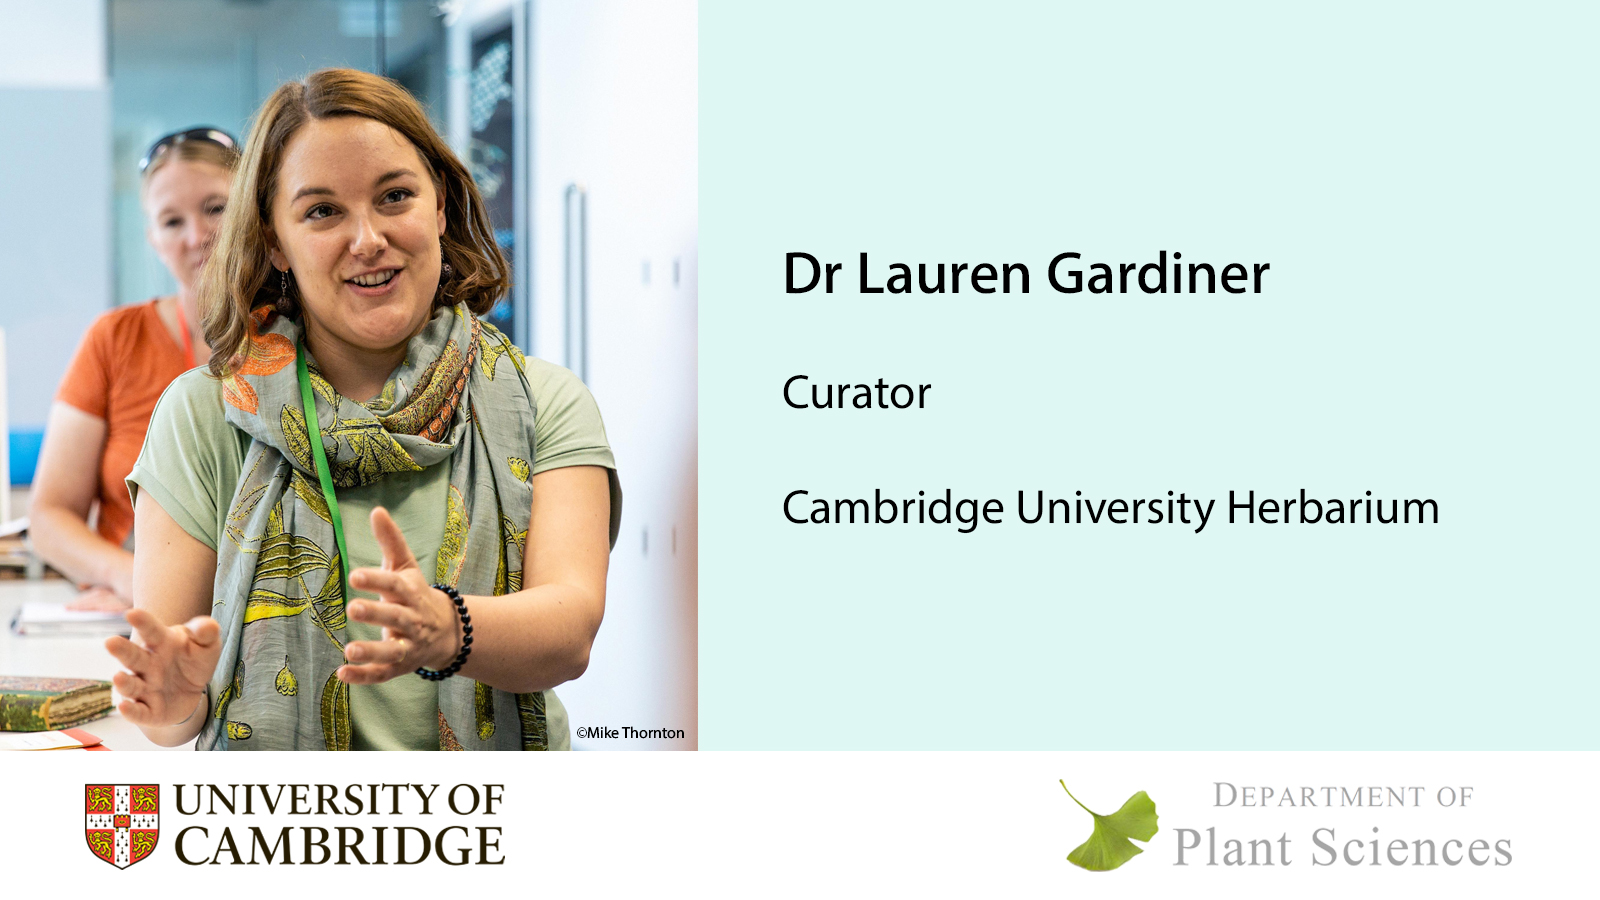 Dr Lauren Gardiner